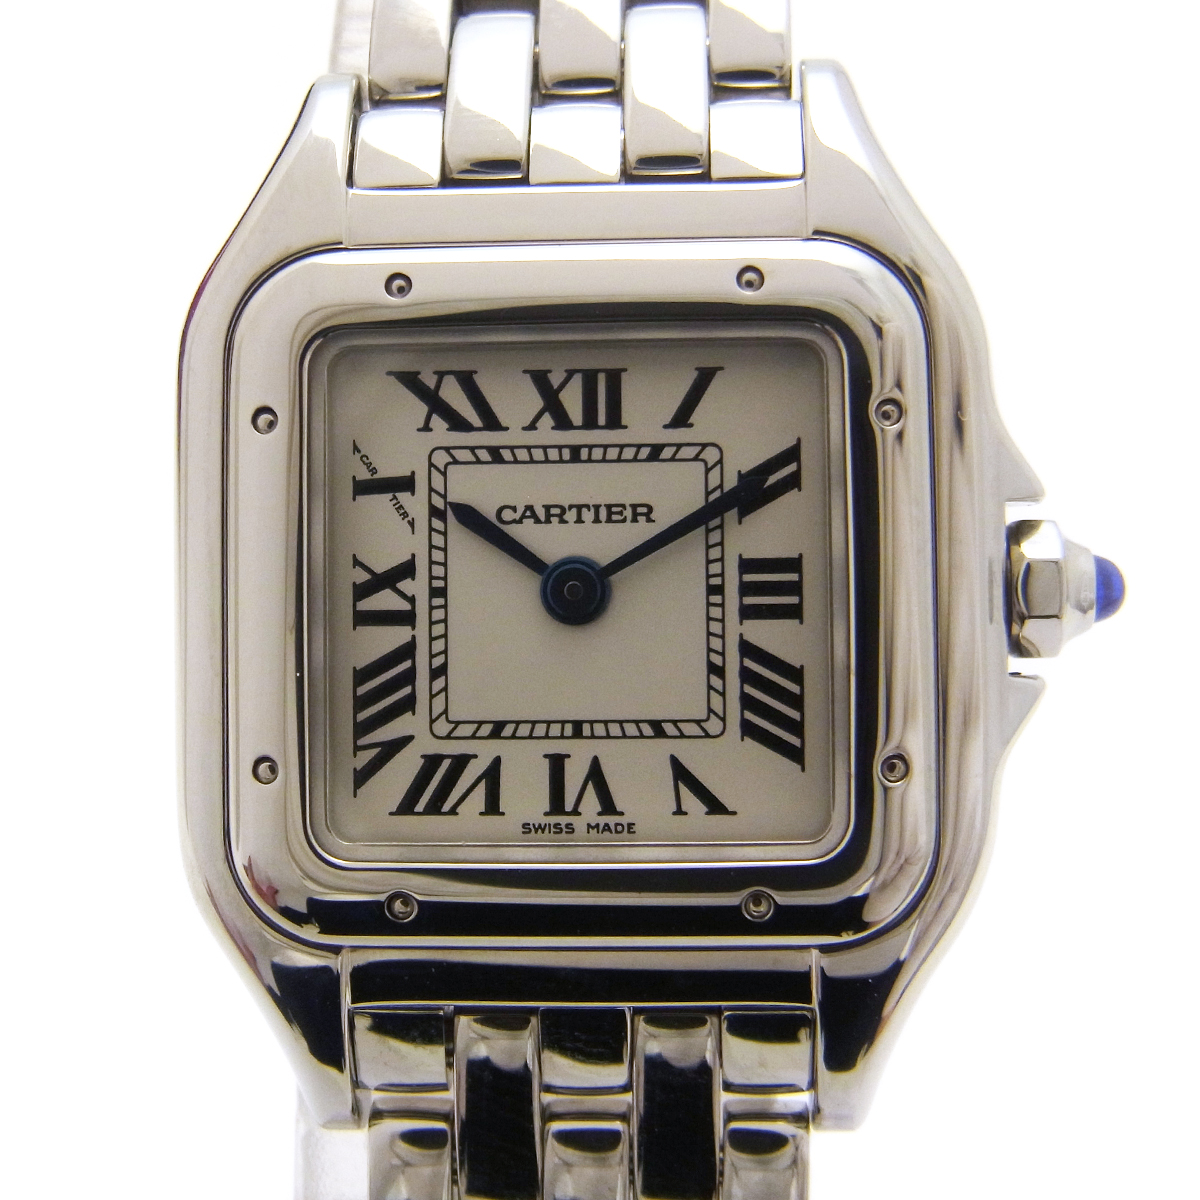 カルティエ(Cartier) パンテール ドゥ カルティエSM 腕時計 WSPN0006 白文字盤 シルバーカラー